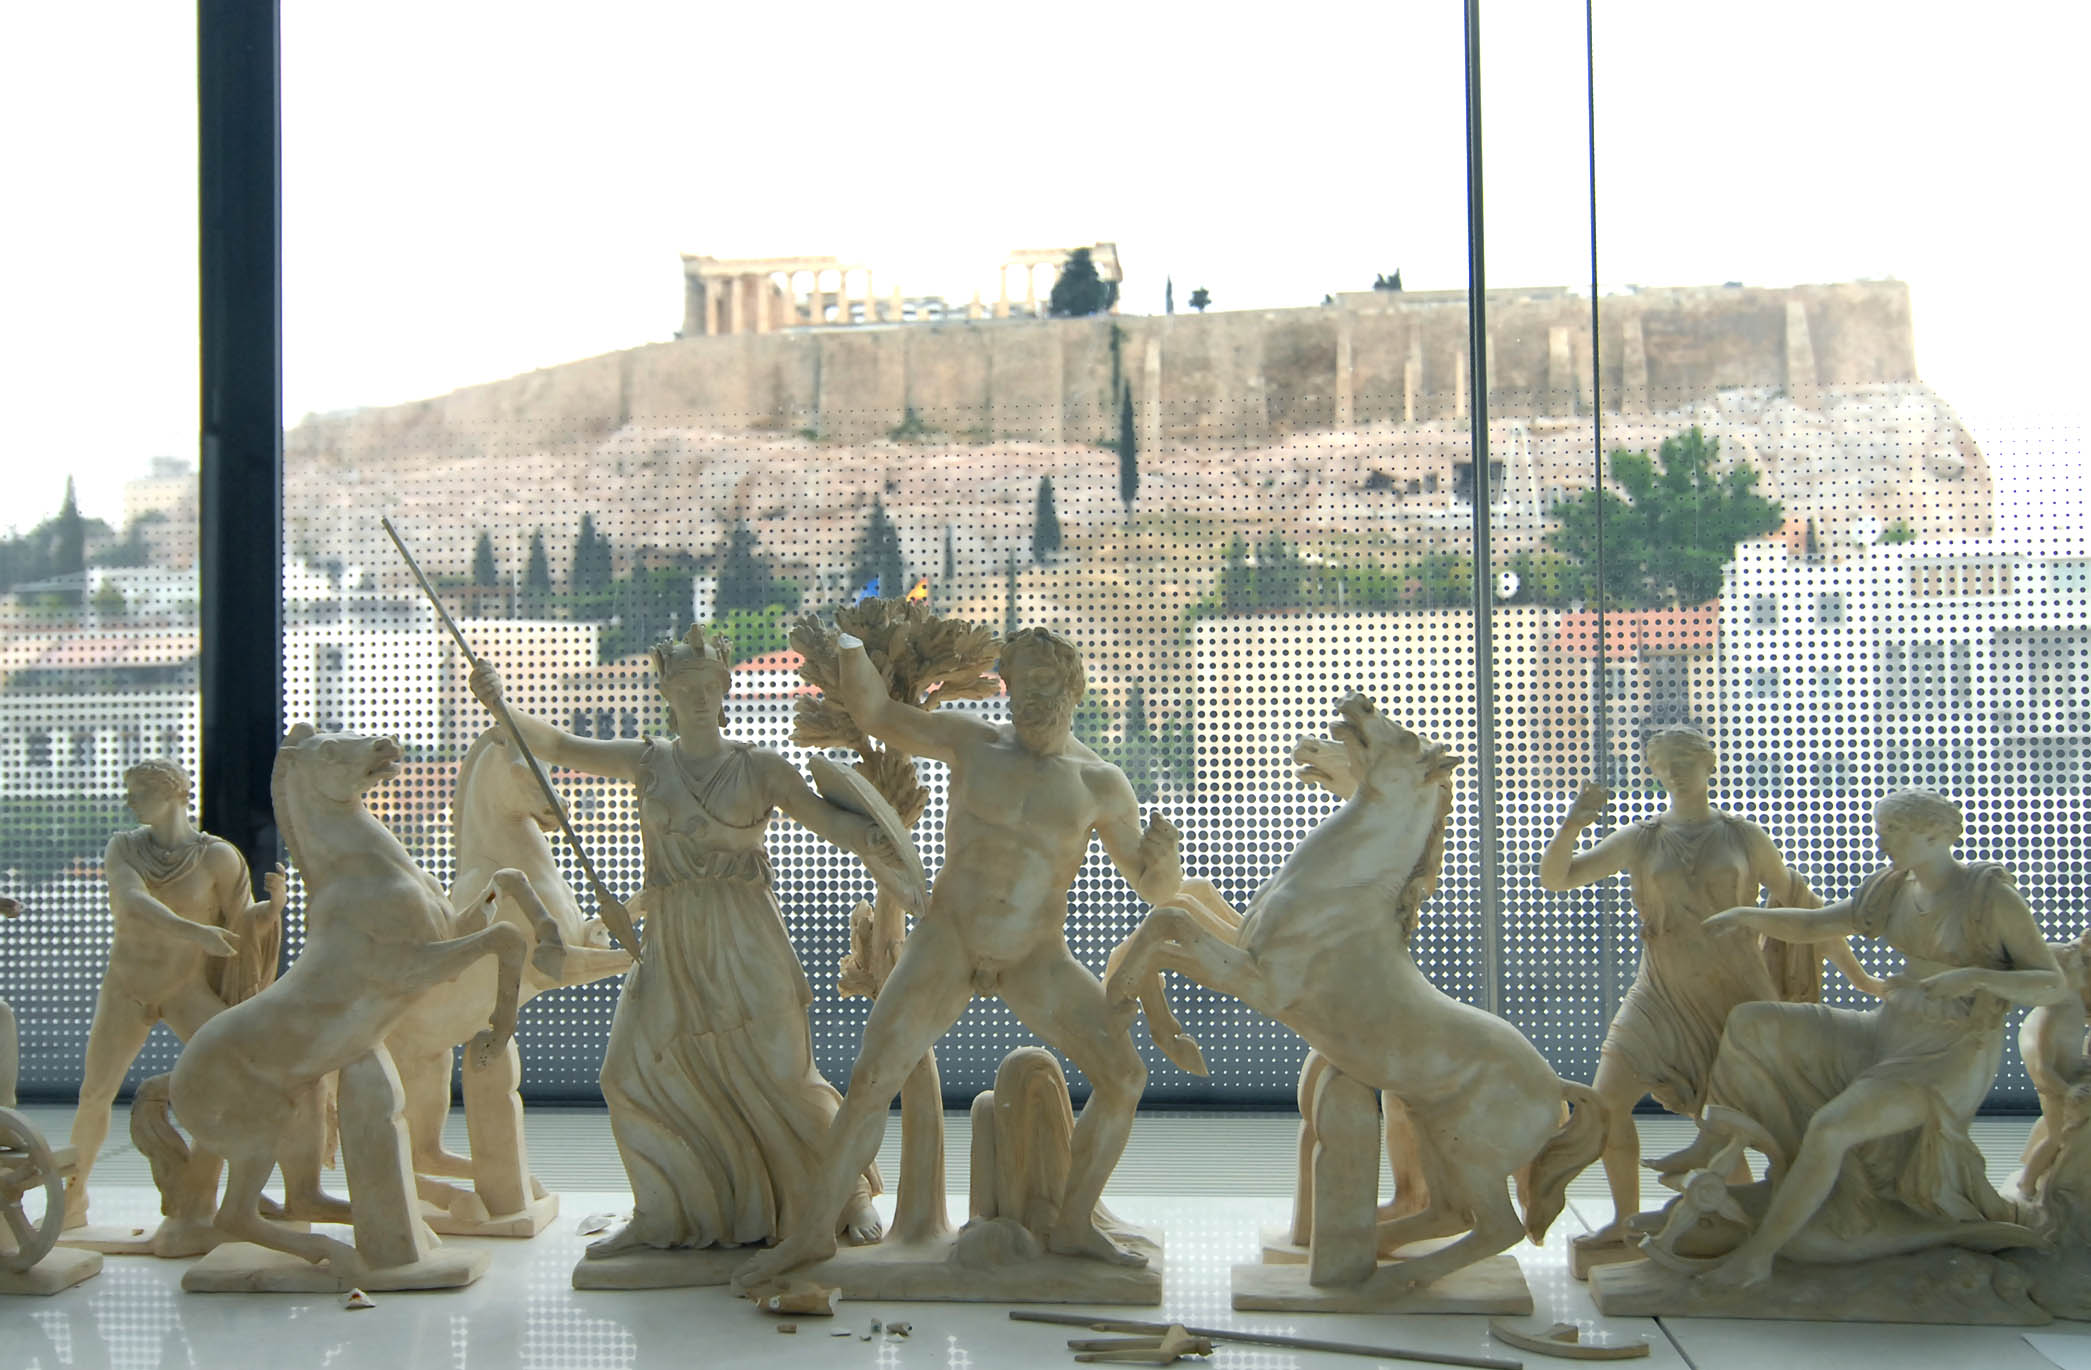 27 αρχαιότητες μεταφέρονται από το παλαιό στο Νέο Μουσείο Ακροπόλεως